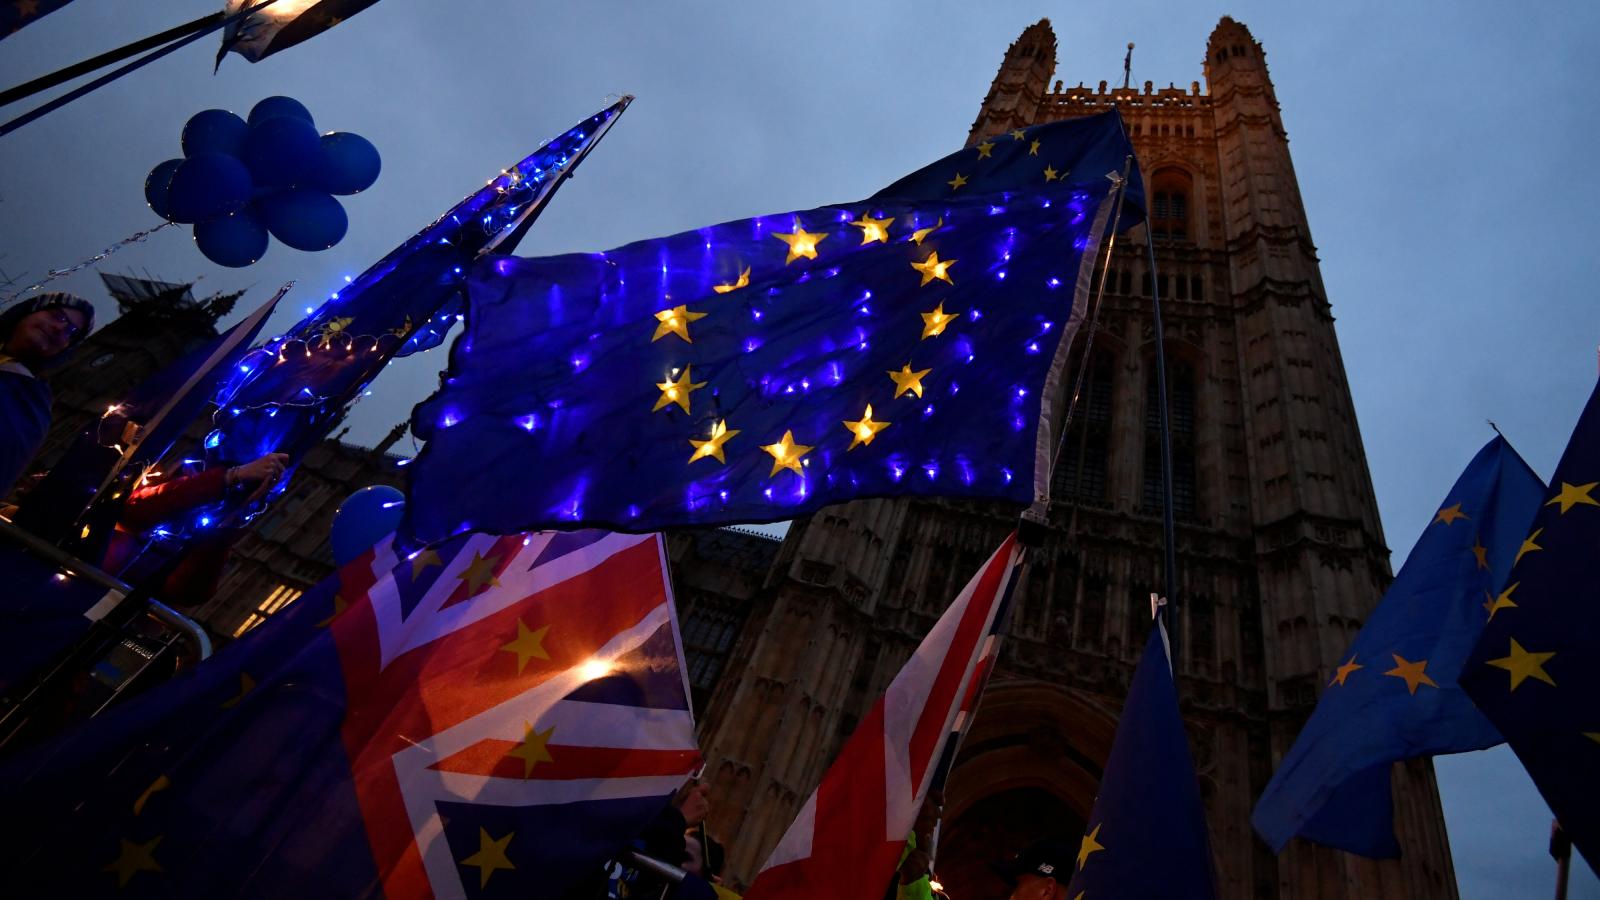 Παράταση στο Brexit μέχρι τις 31 Ιανουαρίου ανακοίνωσαν οι Βρυξέλλες: Χωρίς πίεση ο Μ.Τζόνσον περνάει την συμφωνία